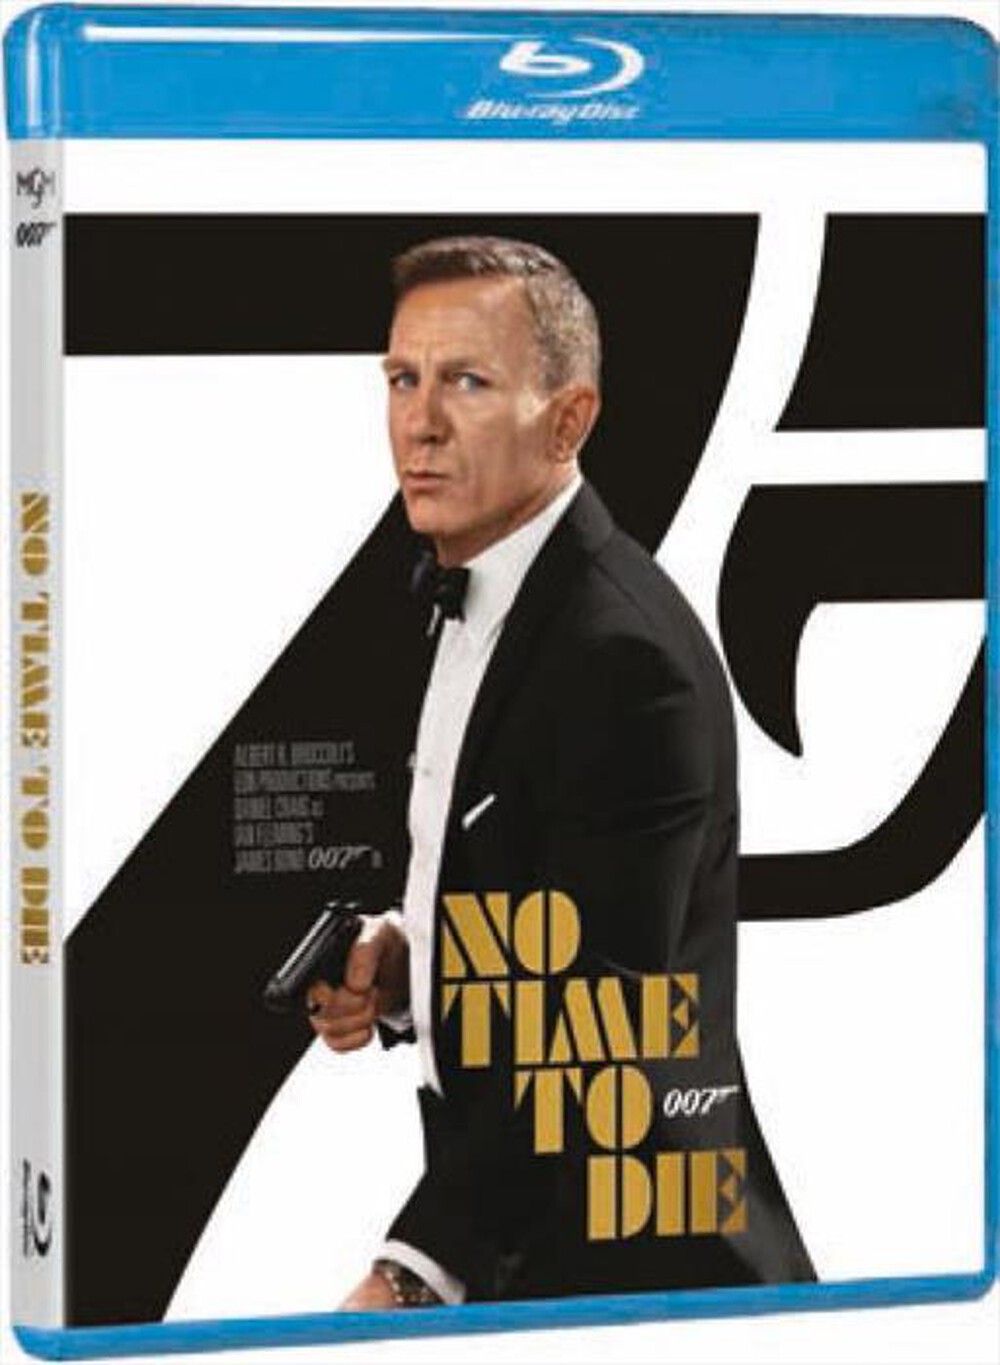 "WARNER HOME VIDEO - 007 No Time To Die"